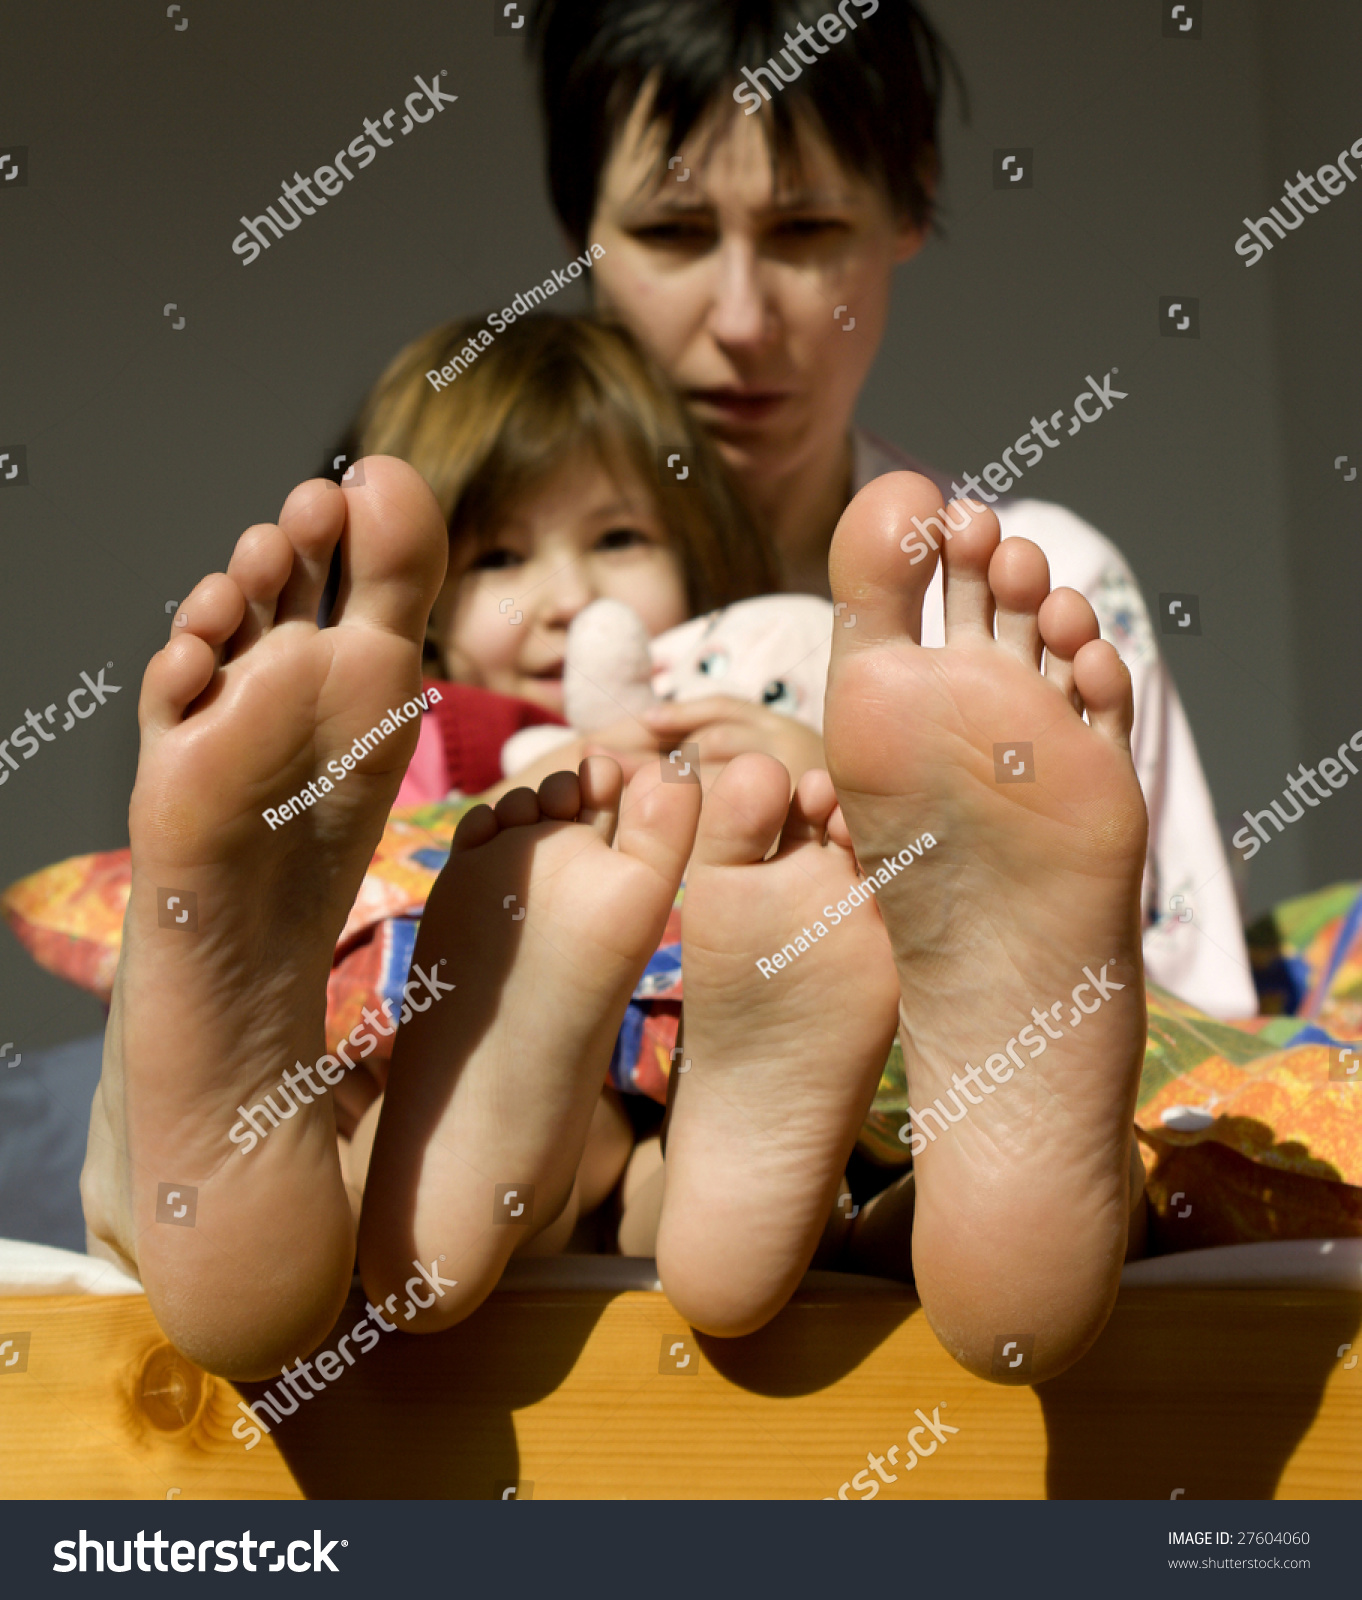 Daughters feet